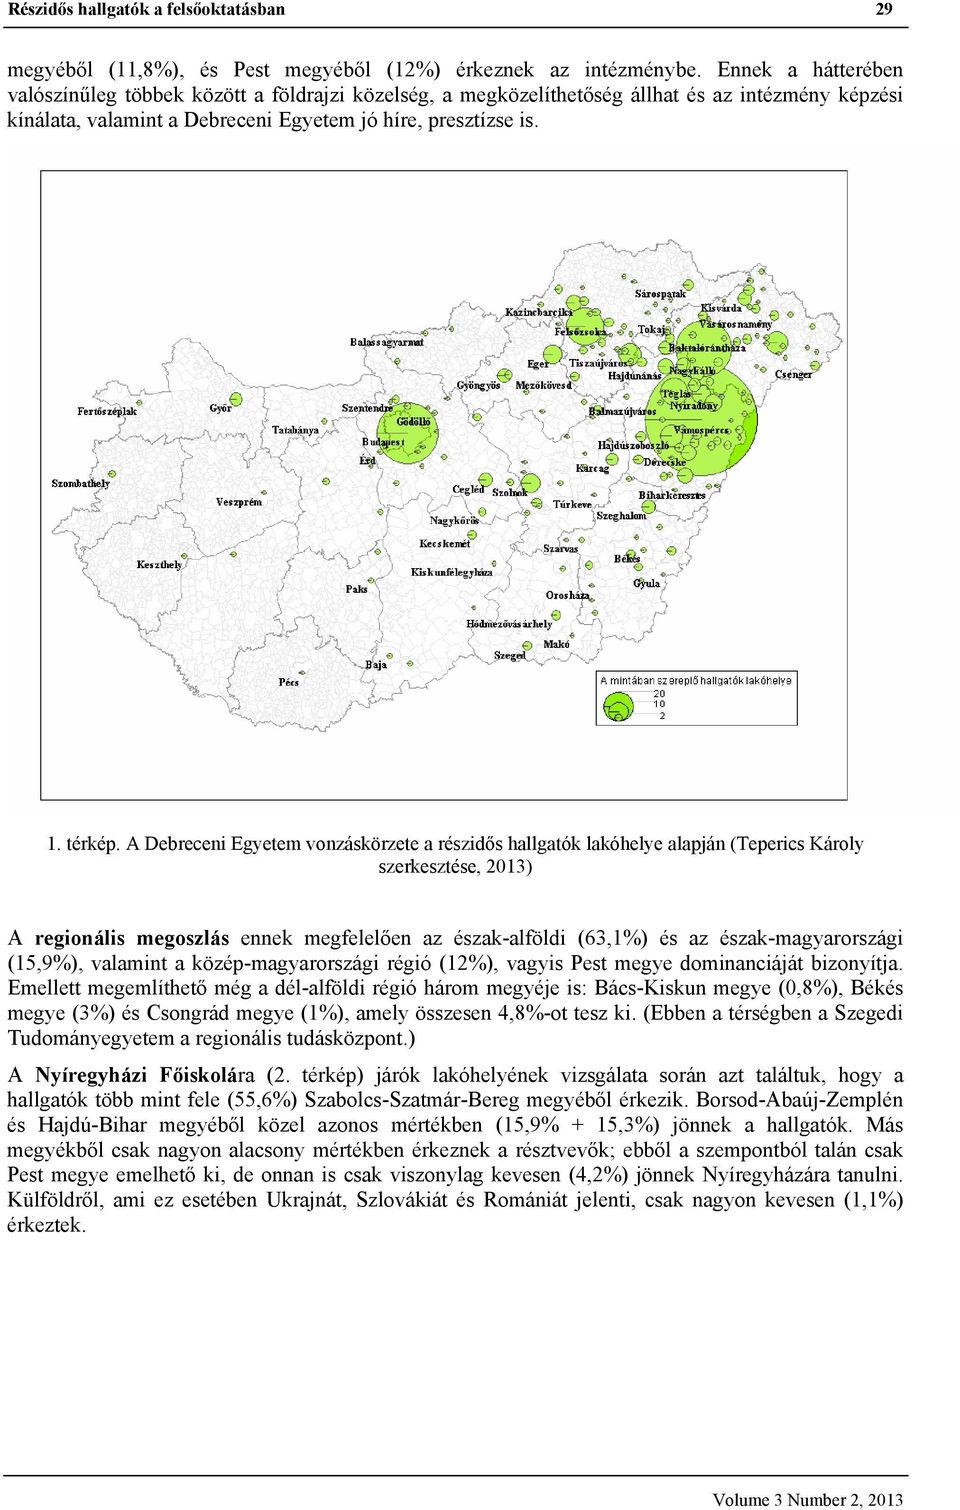 A Debreceni Egyetem vonzáskörzete a részidős hallgatók lakóhelye alapján (Teperics Károly szerkesztése, 2013) A regionális megoszlás ennek megfelelően az észak-alföldi (63,1%) és az